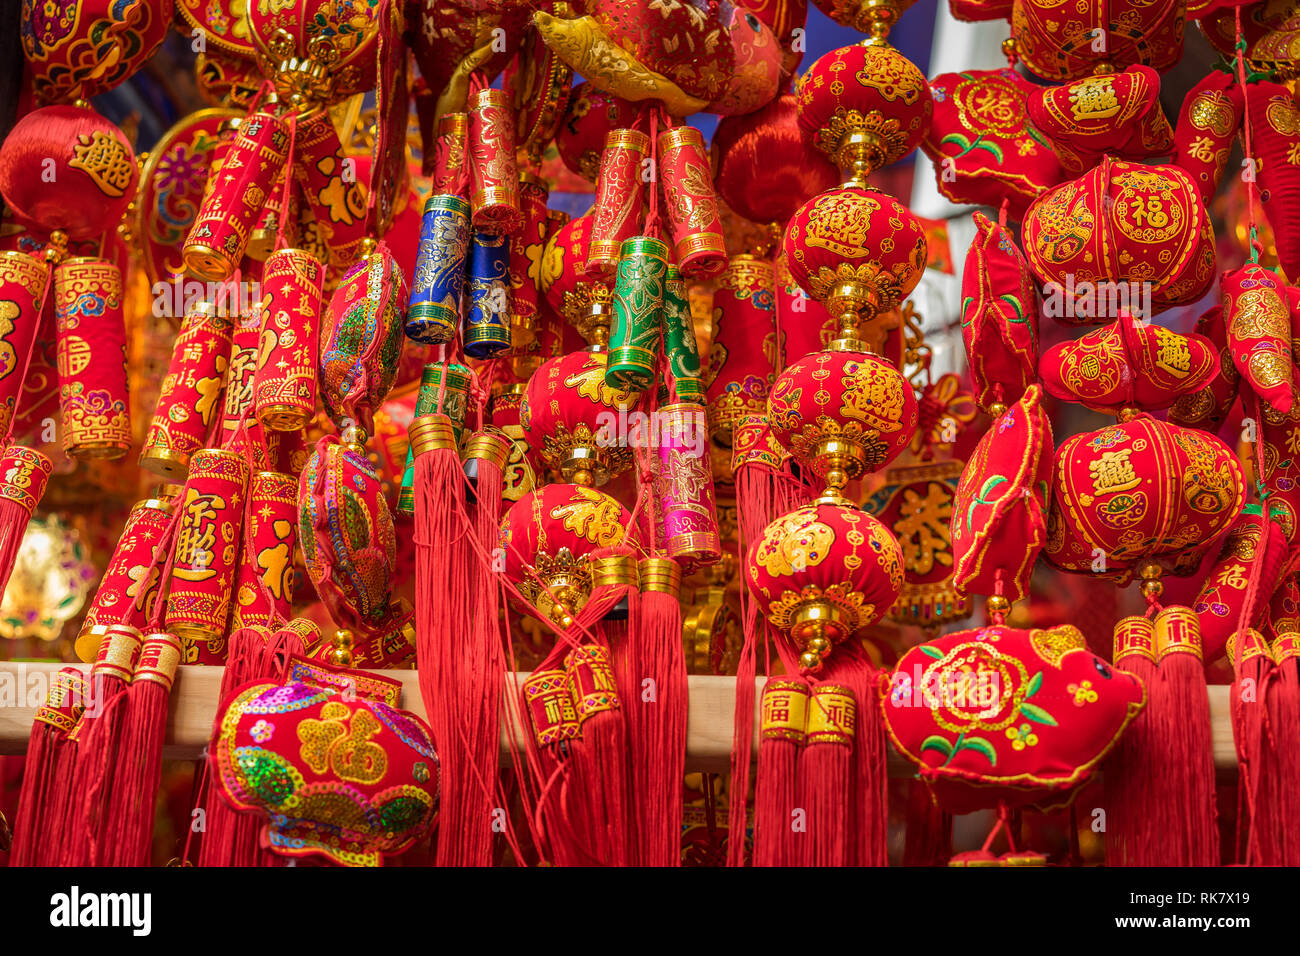 Celebrateing Chinese New Year in Chinatown Stock Photo